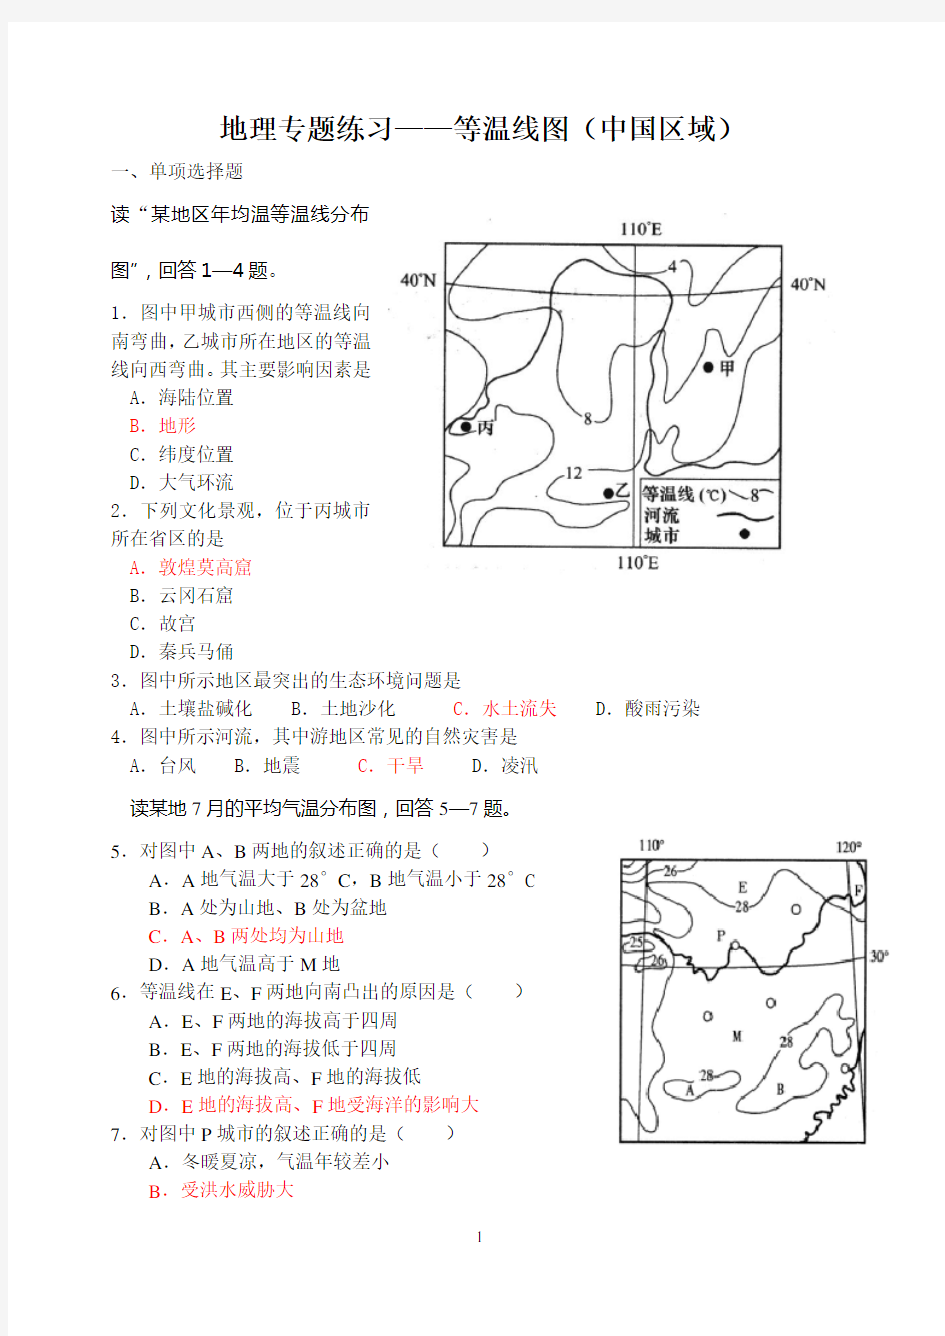 地理专题练习——等温线图(中国区域)